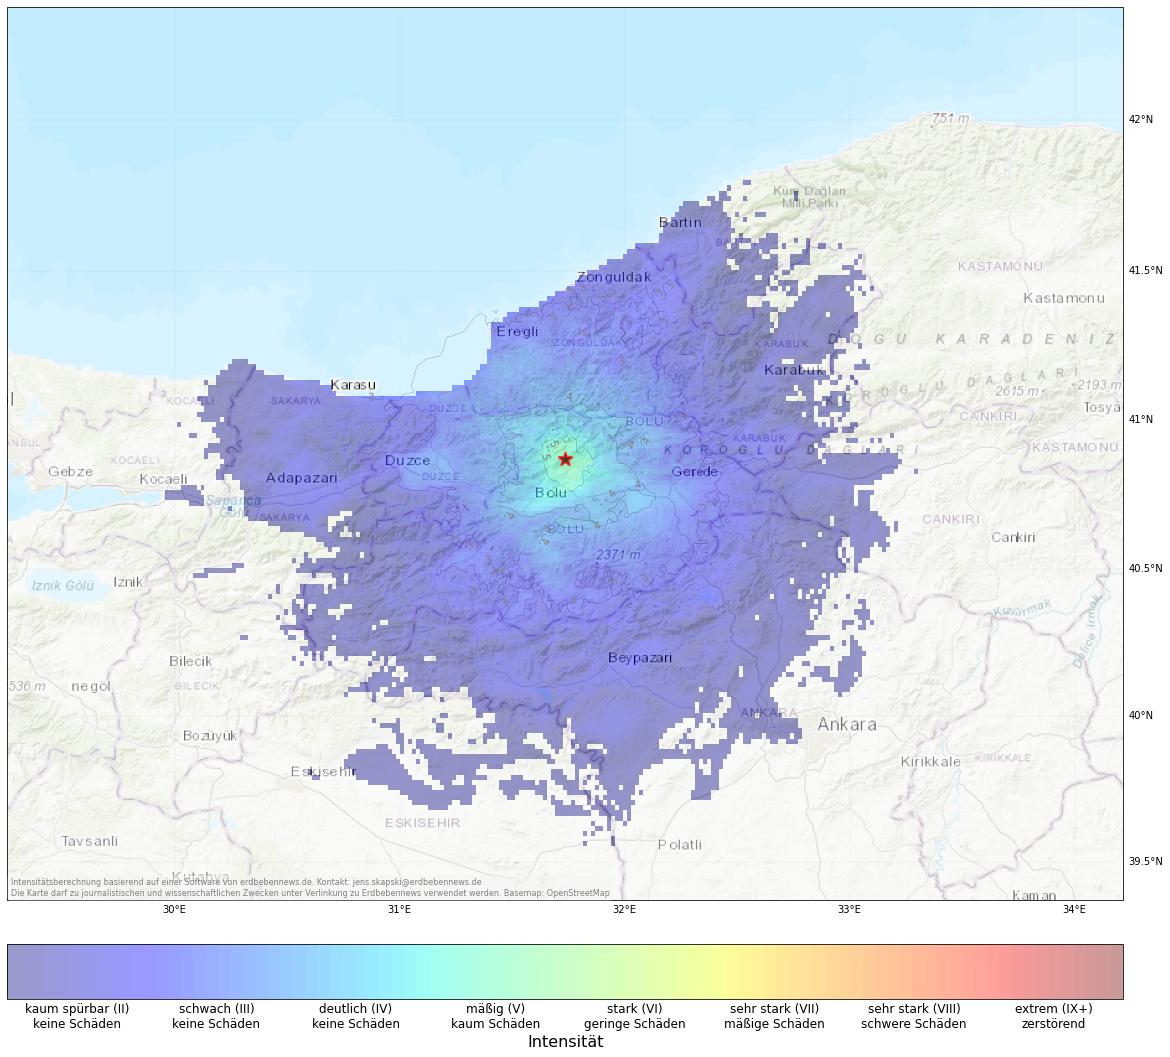 Berechnete Intensität (ShakeMap) des Erdbebens der Stärke 4.5 am 14. Oktober, 16:07 Uhr in Türkei